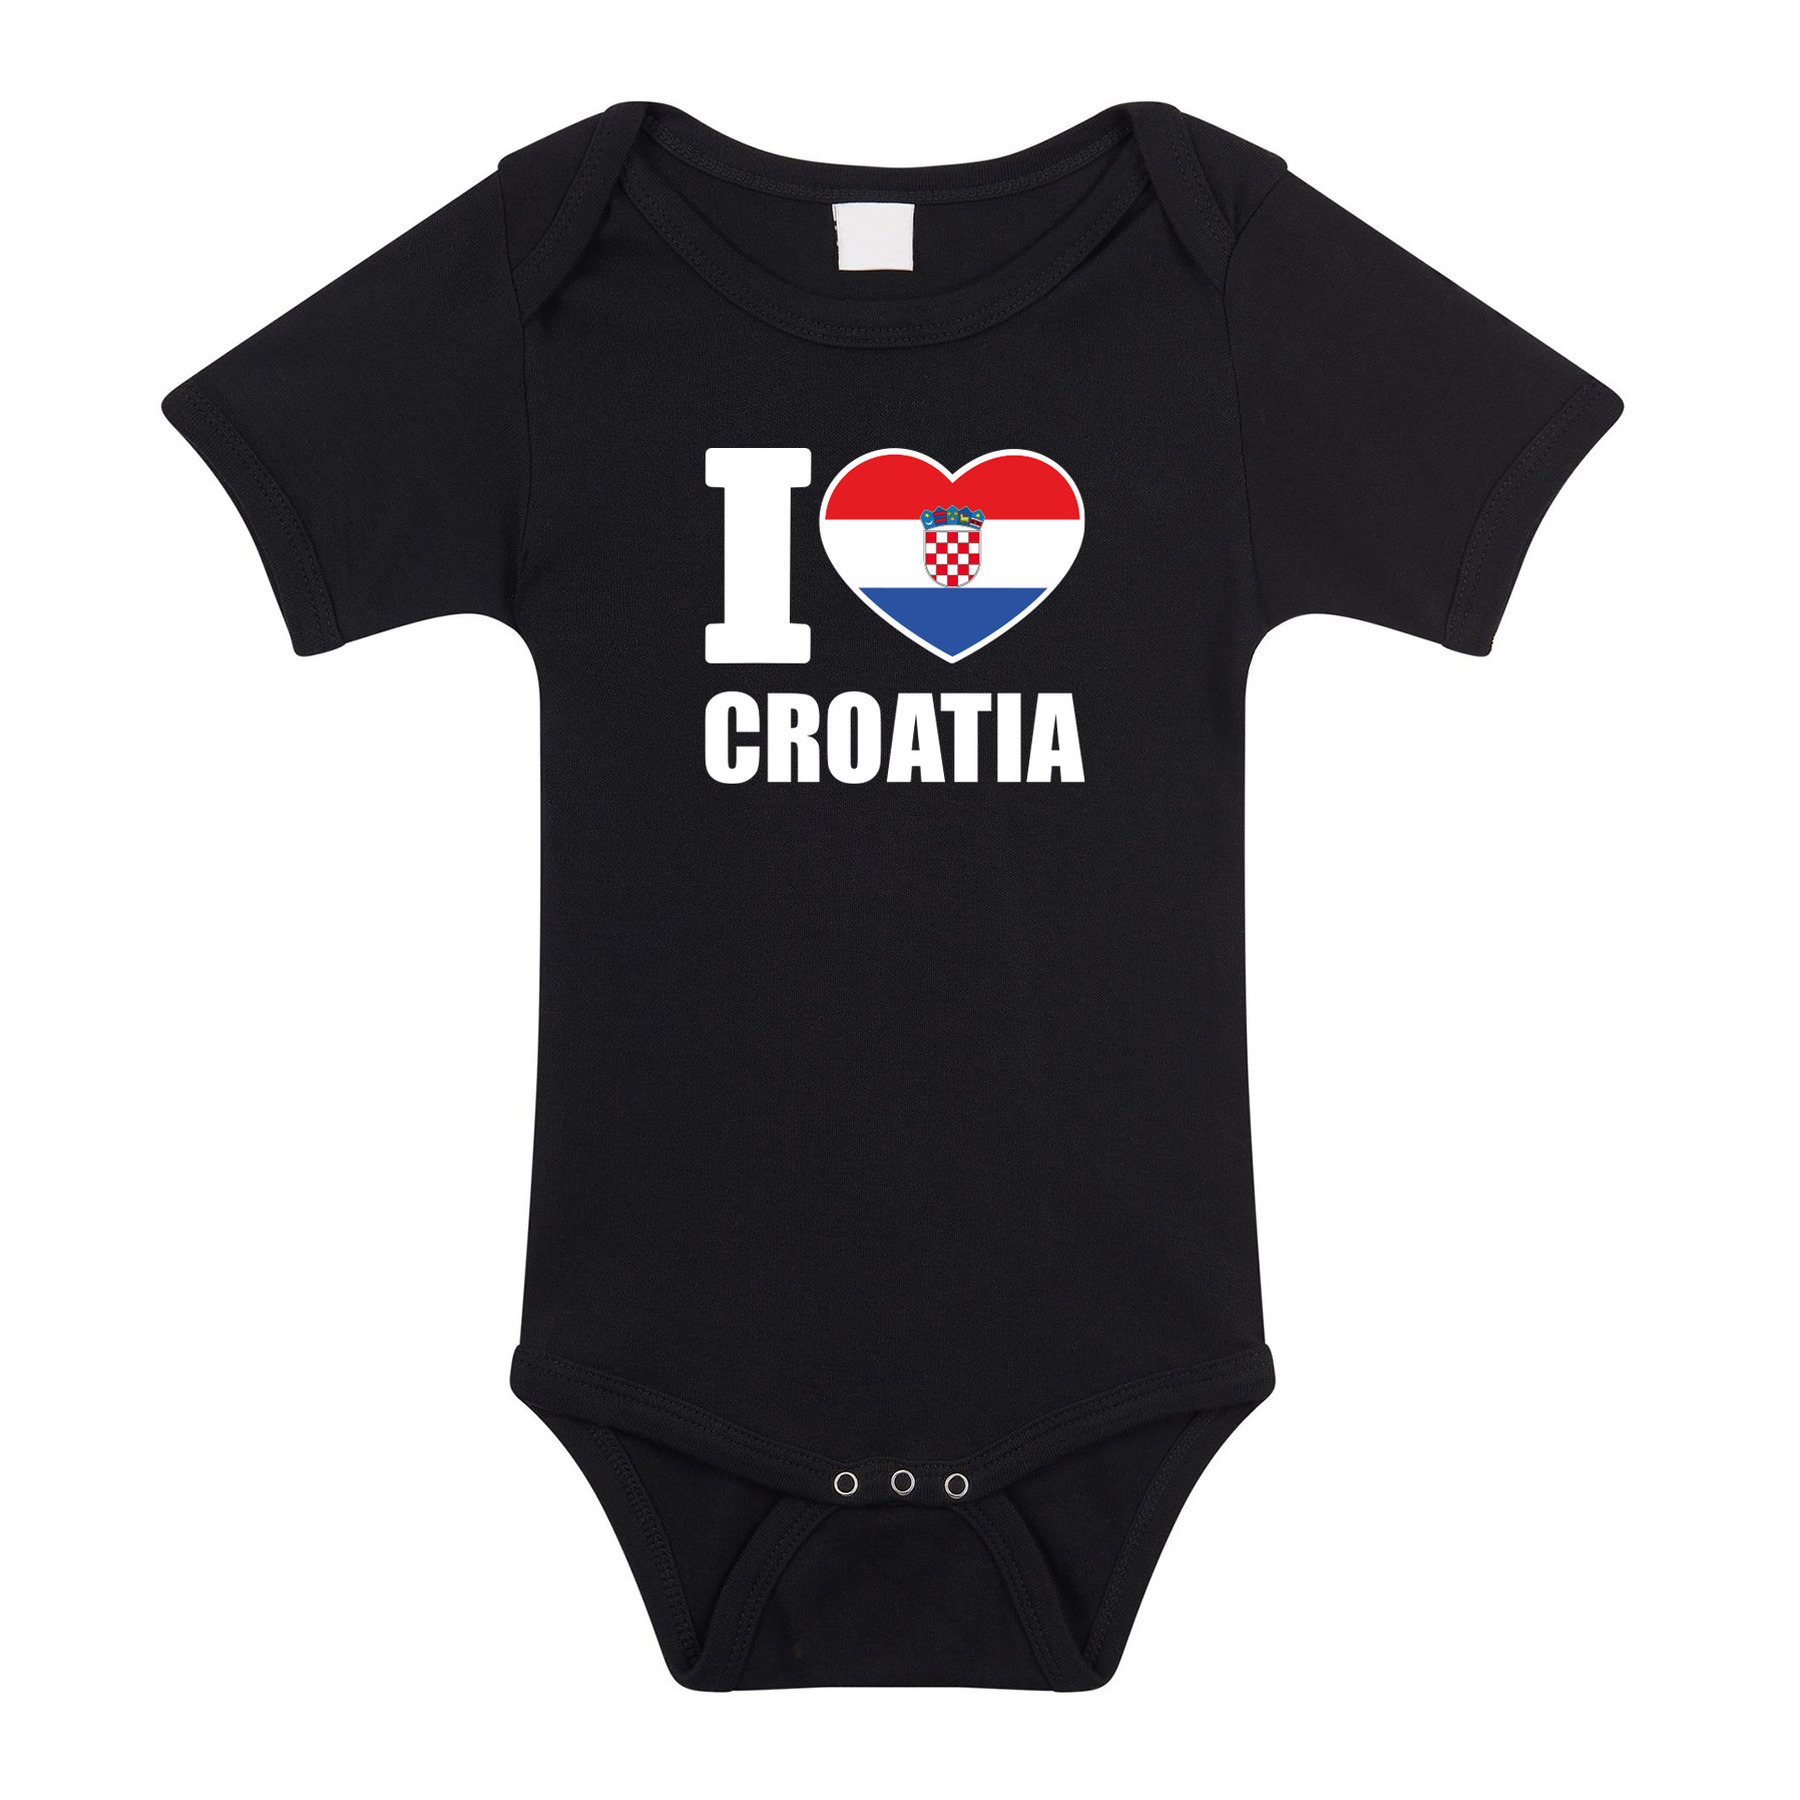 I love Croatia baby rompertje zwart Kroatie jongen-meisje